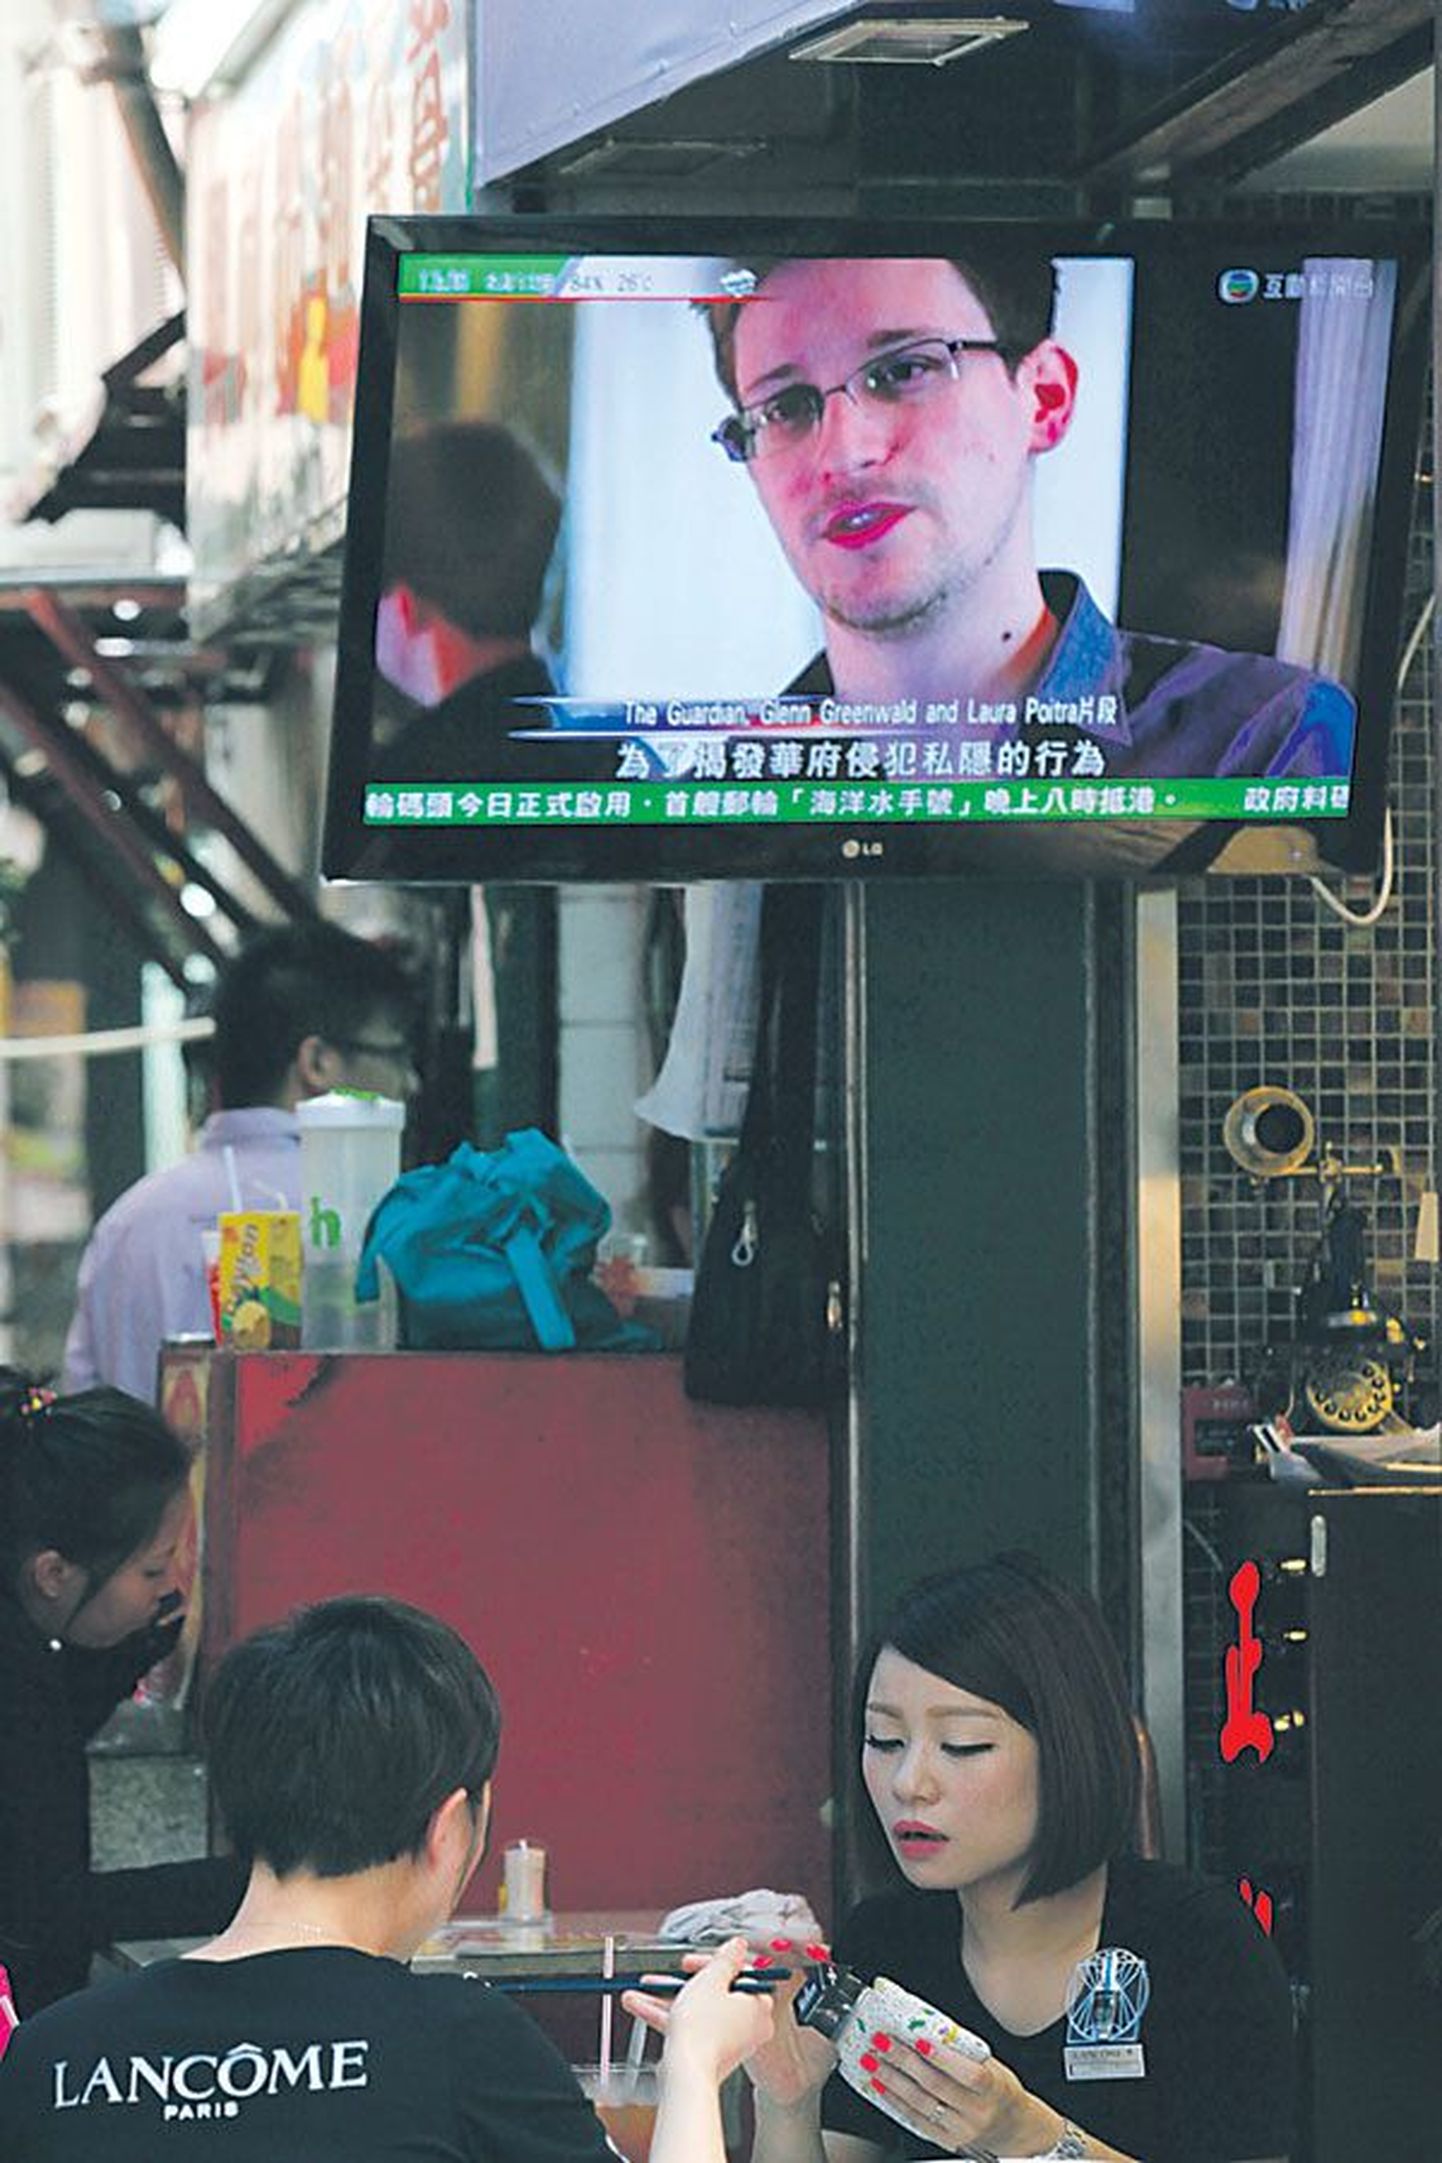 На ТВ-экране одного из ресторанов Гонконга транслируются новости, в кадре — Эдвард Сноуден. 12 июня 2013 года его местонахождение оставалось неизвестным.